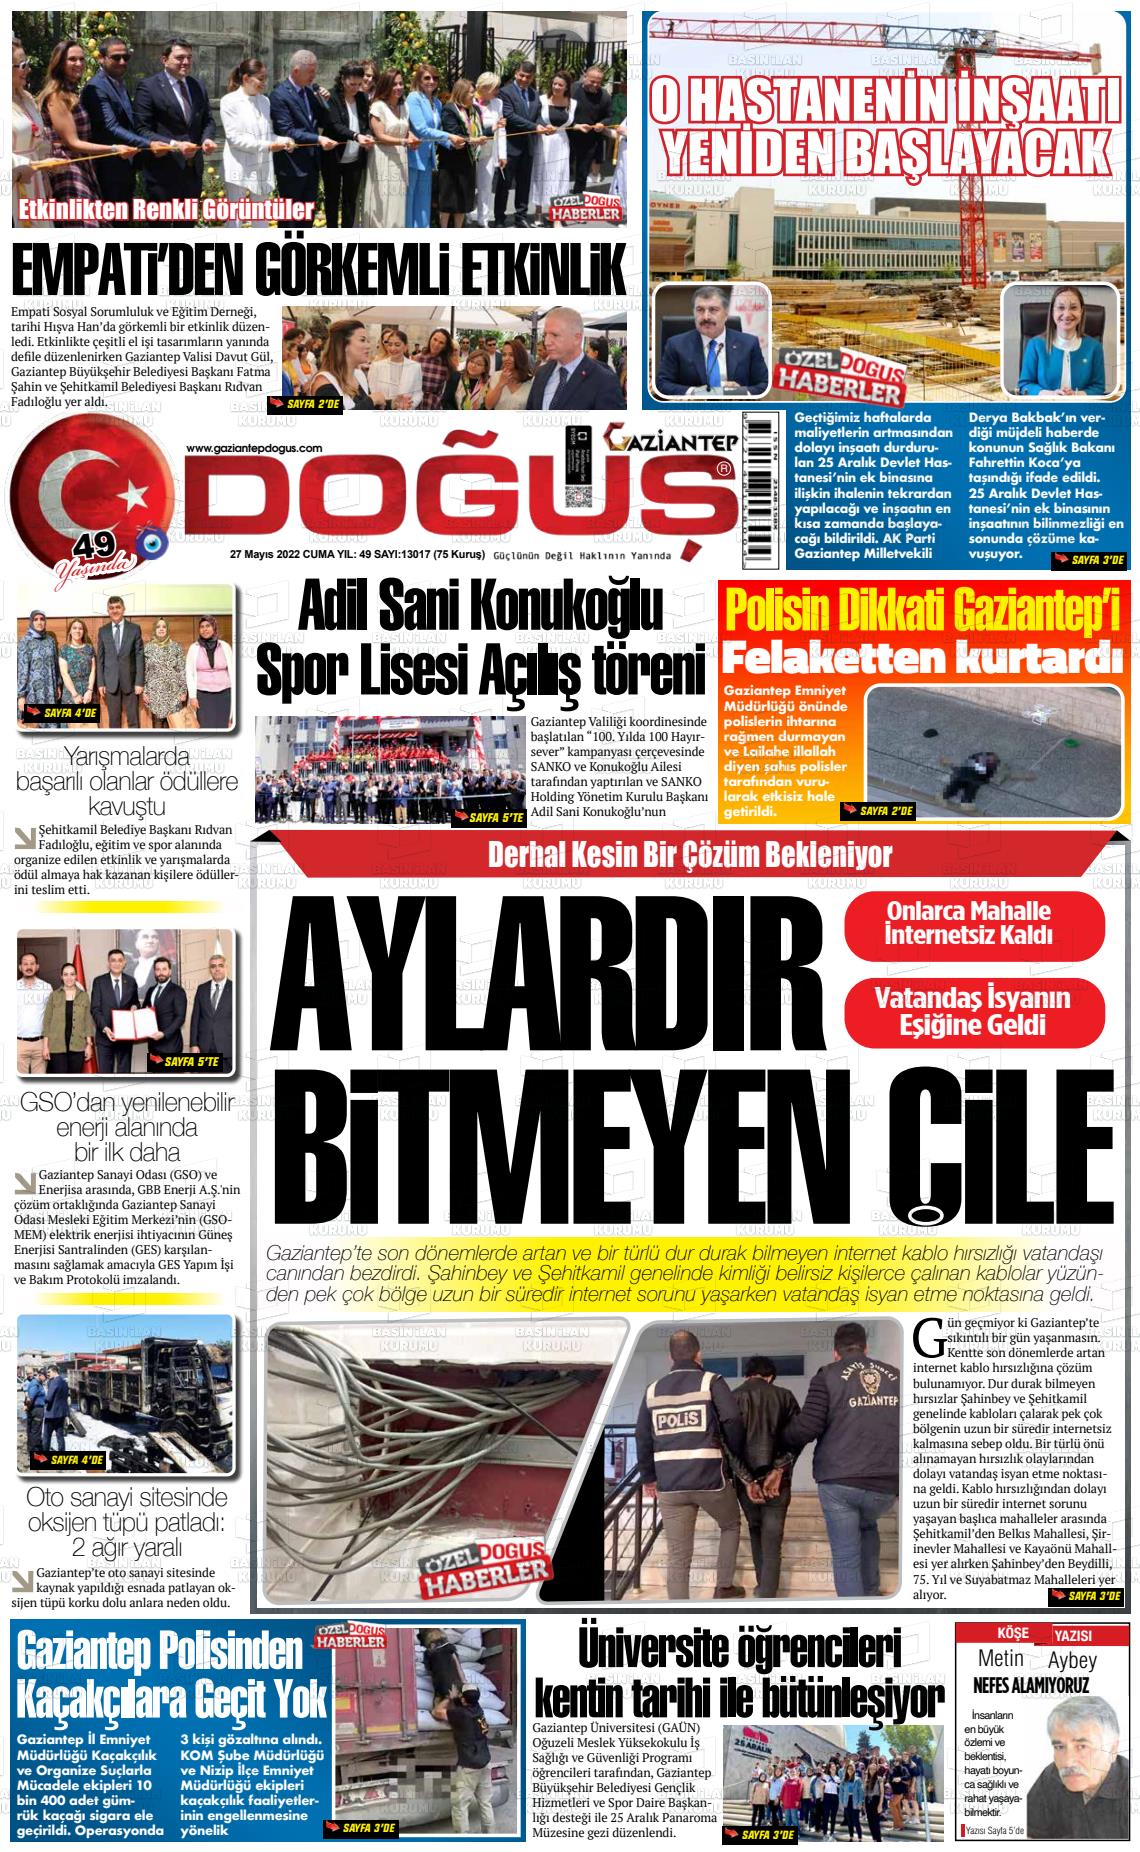 27 Mayıs 2022 Gaziantep Doğuş Gazete Manşeti